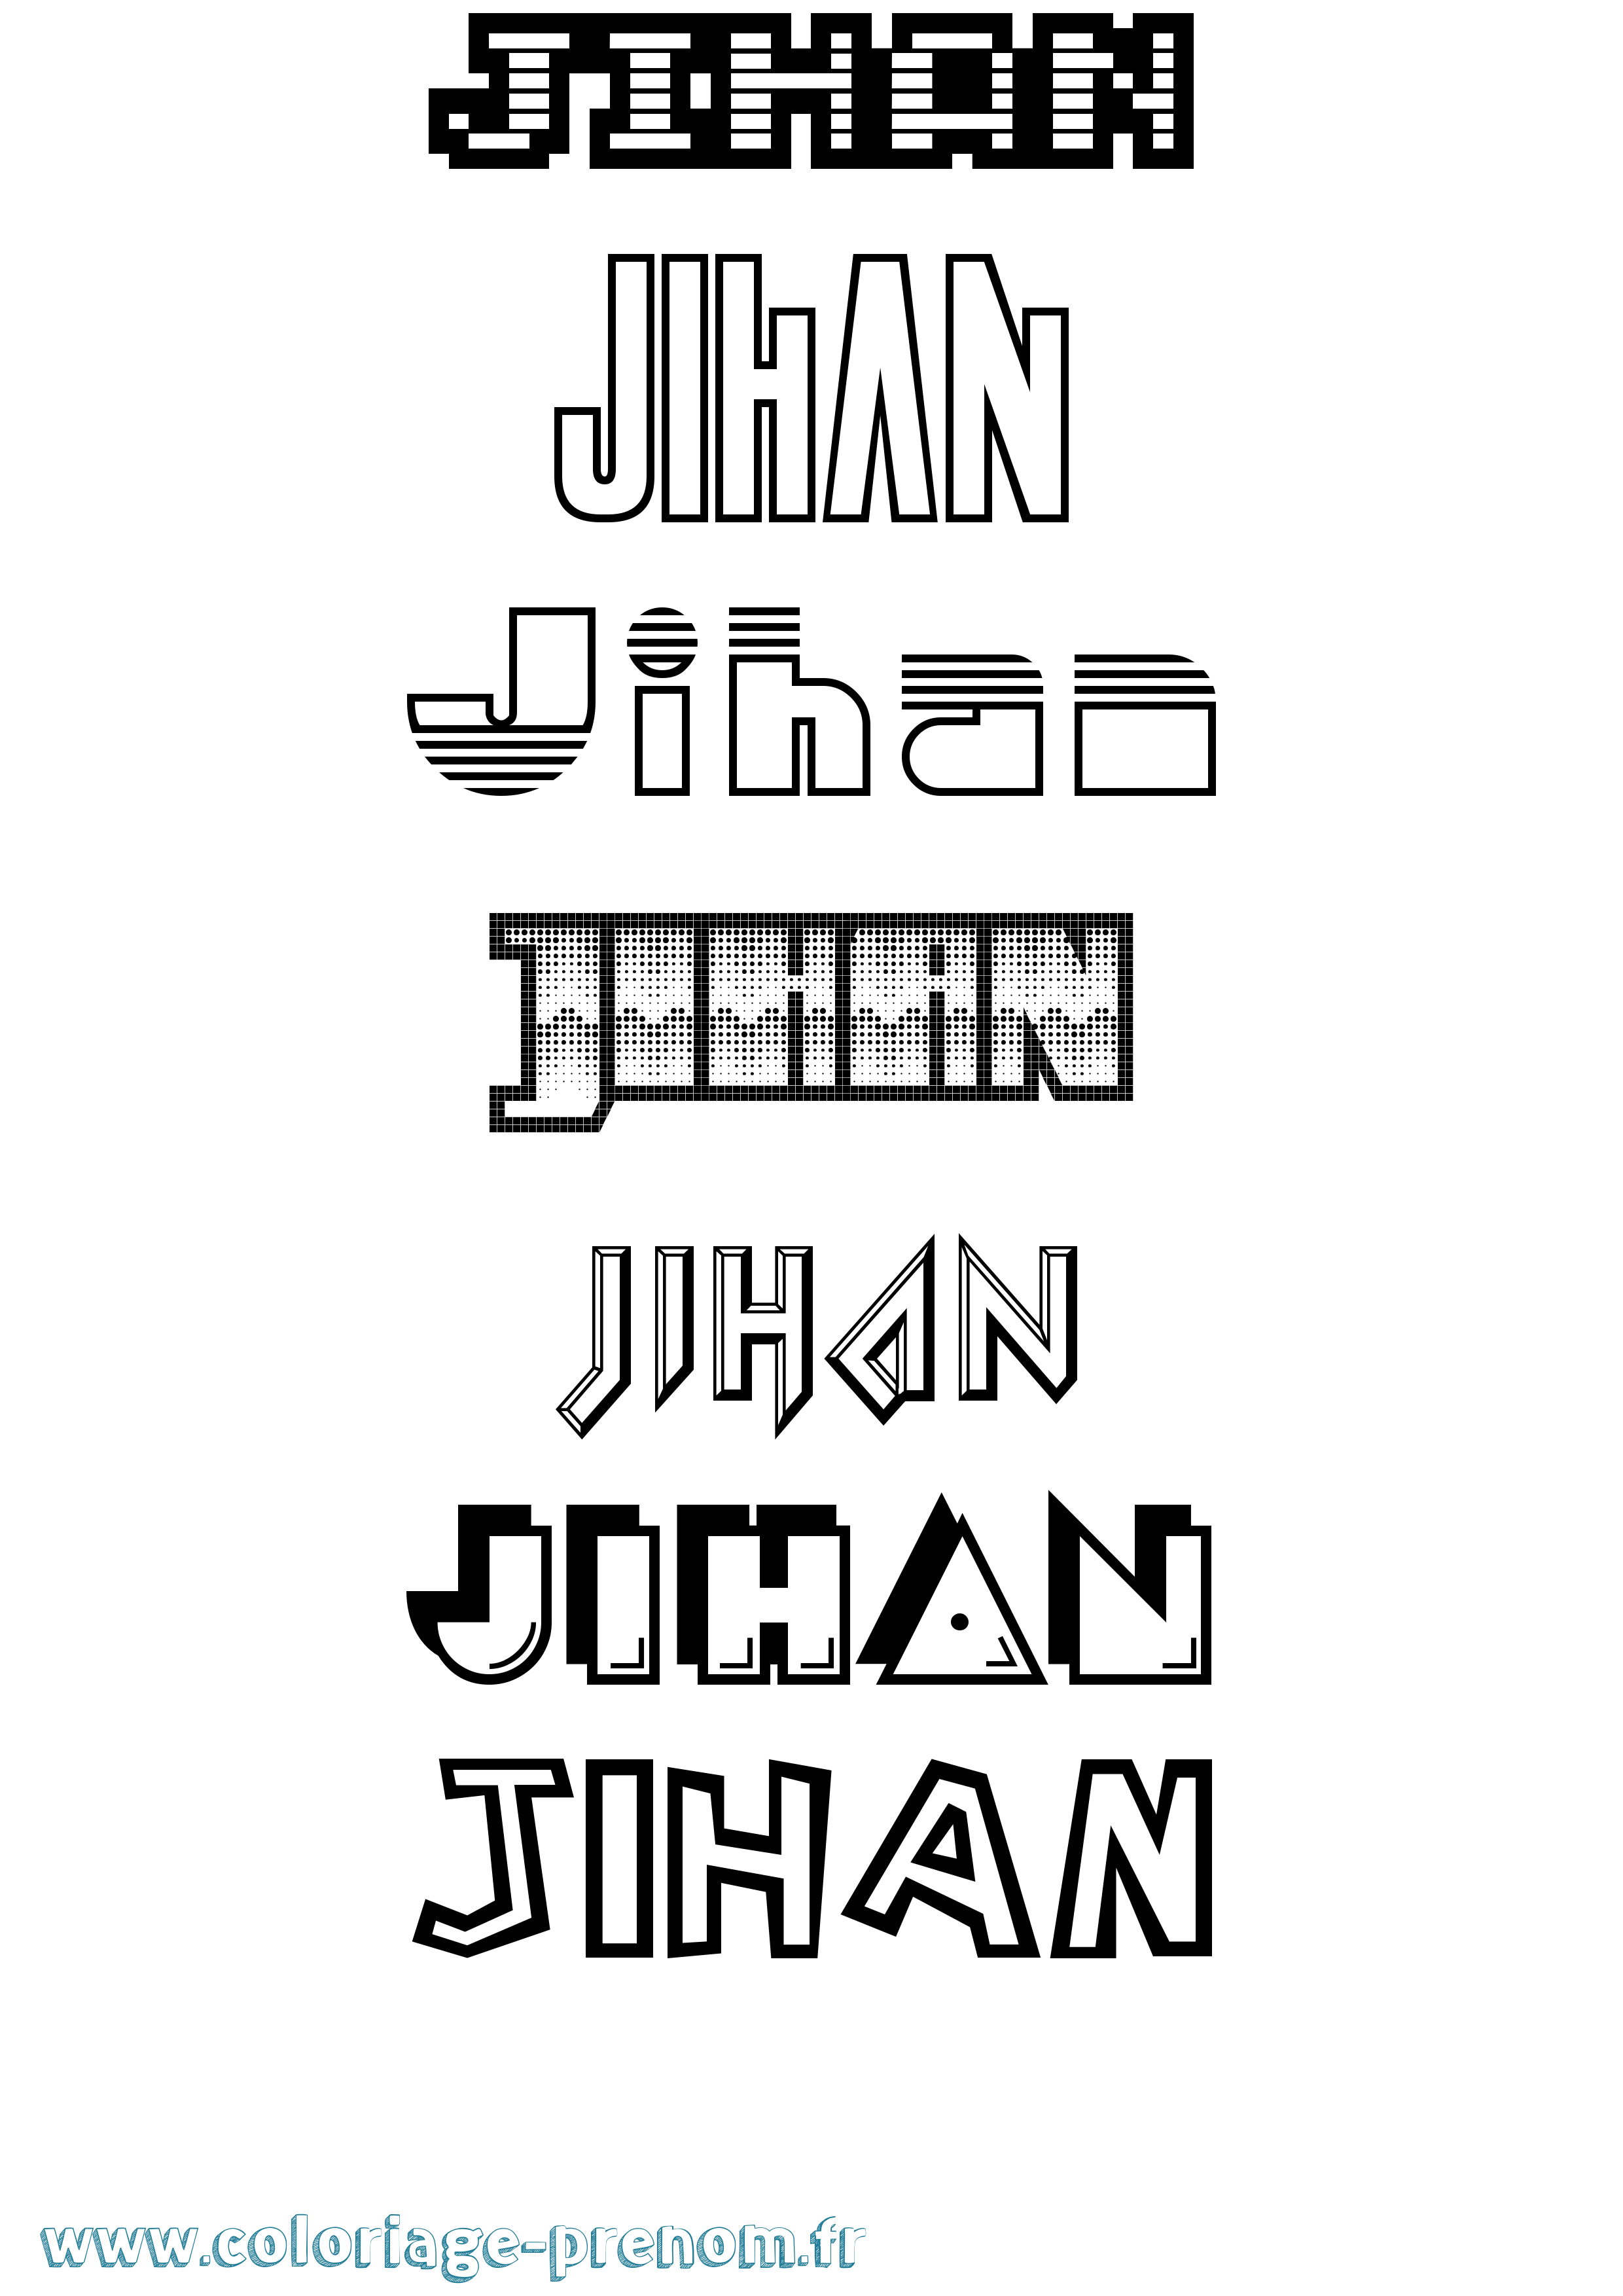 Coloriage prénom Jihan Jeux Vidéos